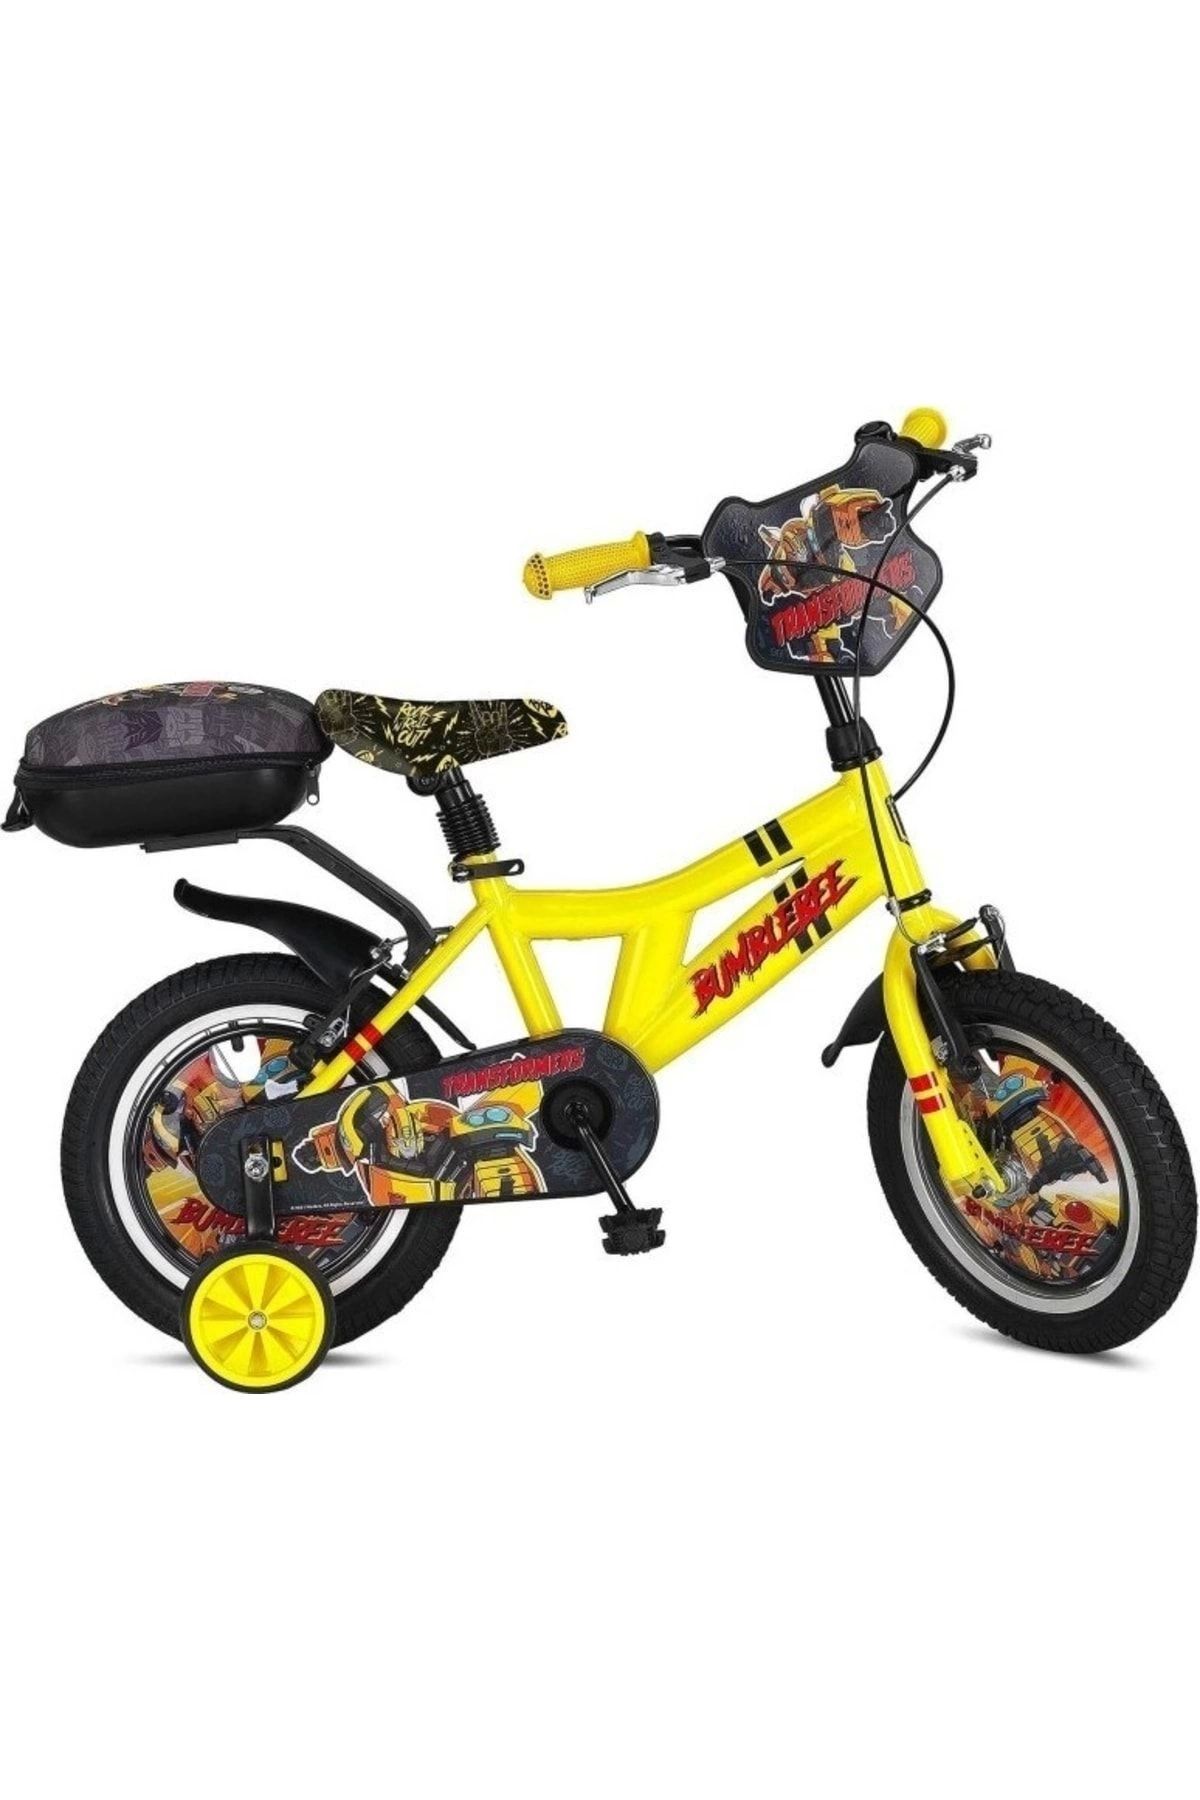 Ümit Bisiklet Ümit 1404 Transformers 14 Jant Çocuk Bisikleti (80/100cm Boy)